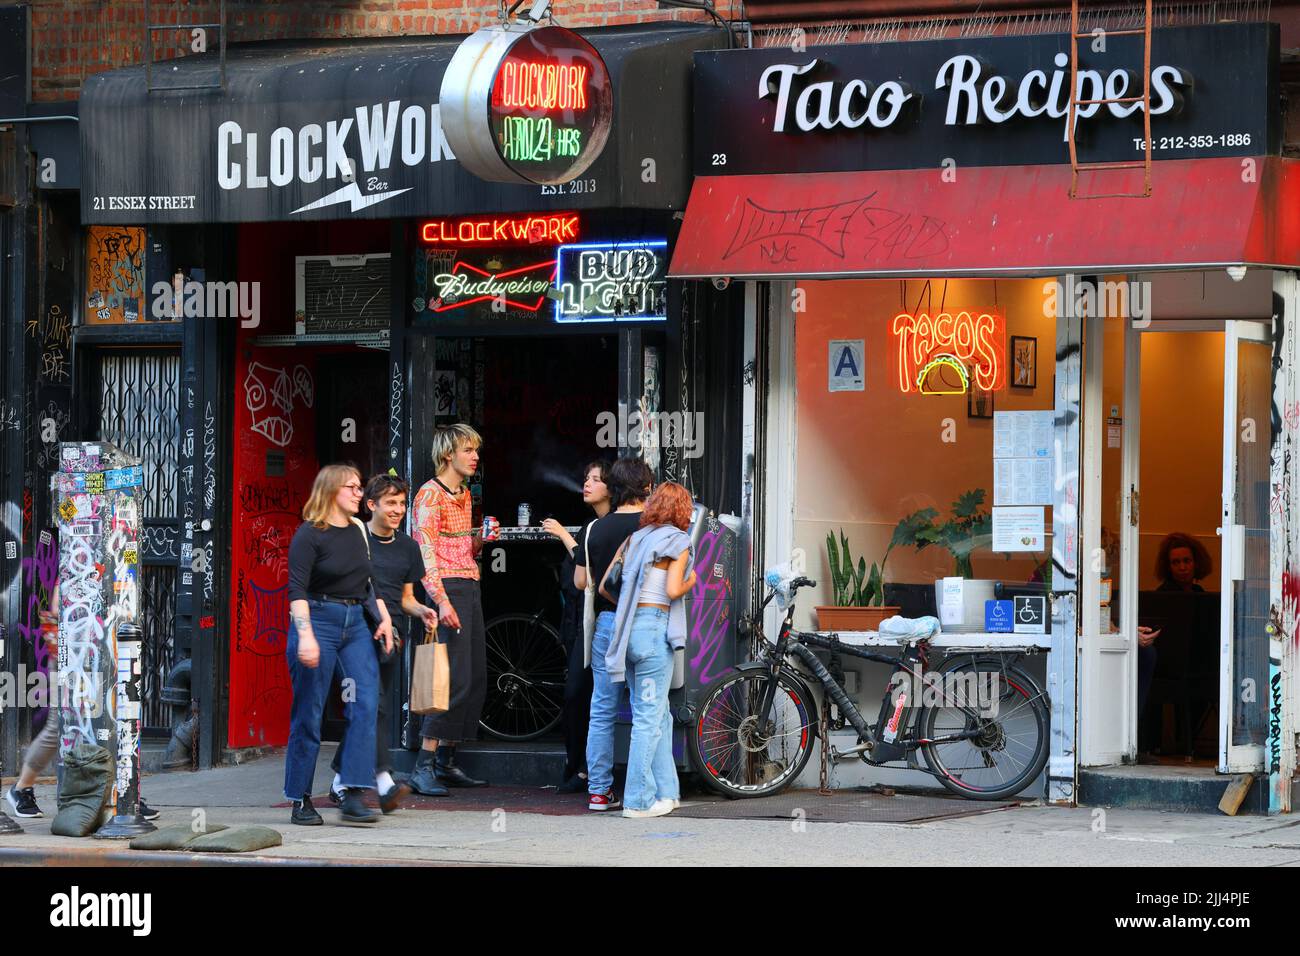 Clockwork Bar, 21 Essex St ; Taco Recipes, 23 Essex St, New York, New York Zoomers, Generation Z à l'extérieur d'un bar dans le Lower East Side de Manhattan. Banque D'Images